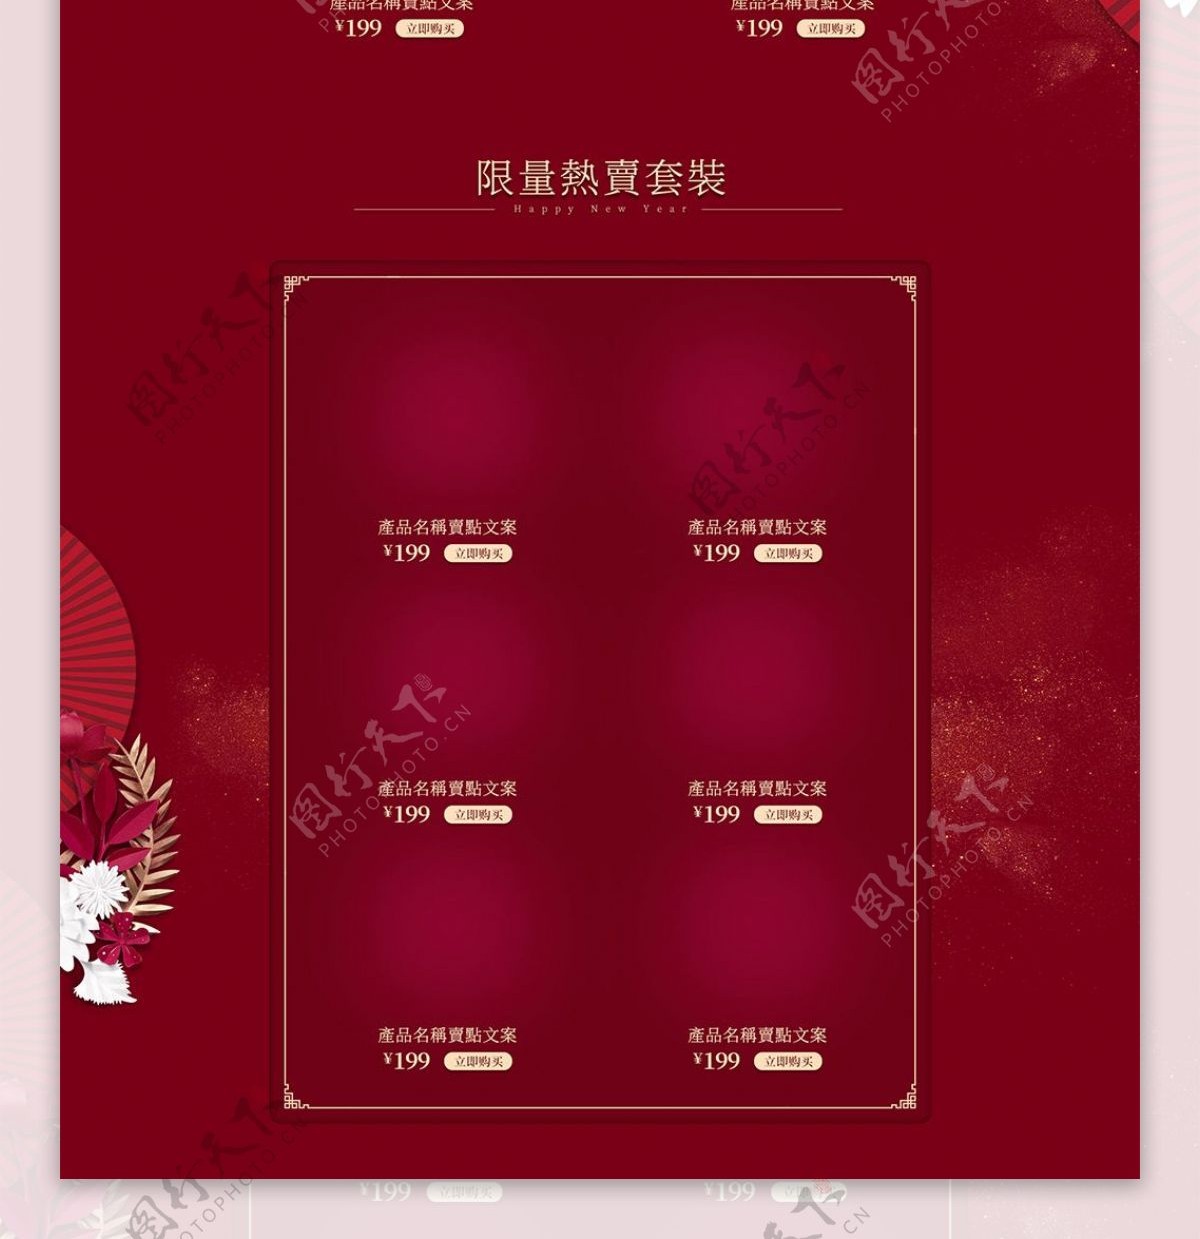 喜庆红色活动促销彩妆新年限量版首页模板